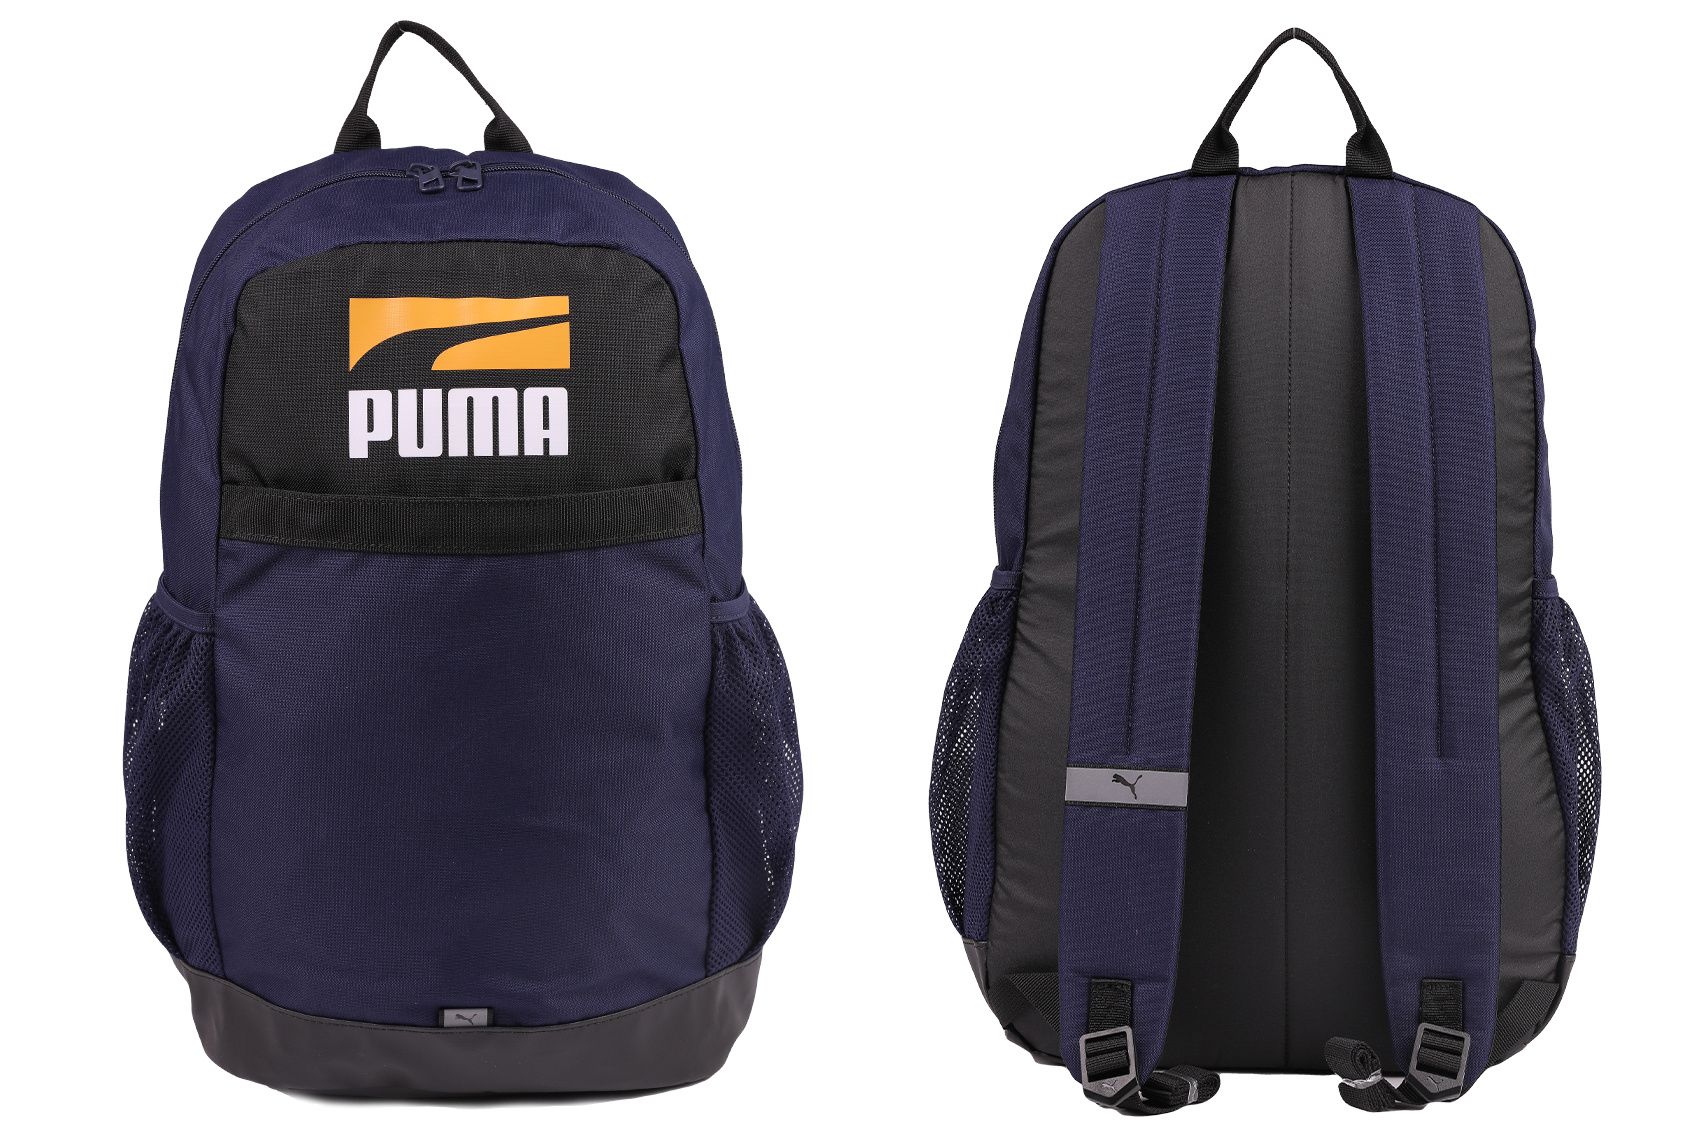 PUMA Batoh Plus Backpack II 78391 02